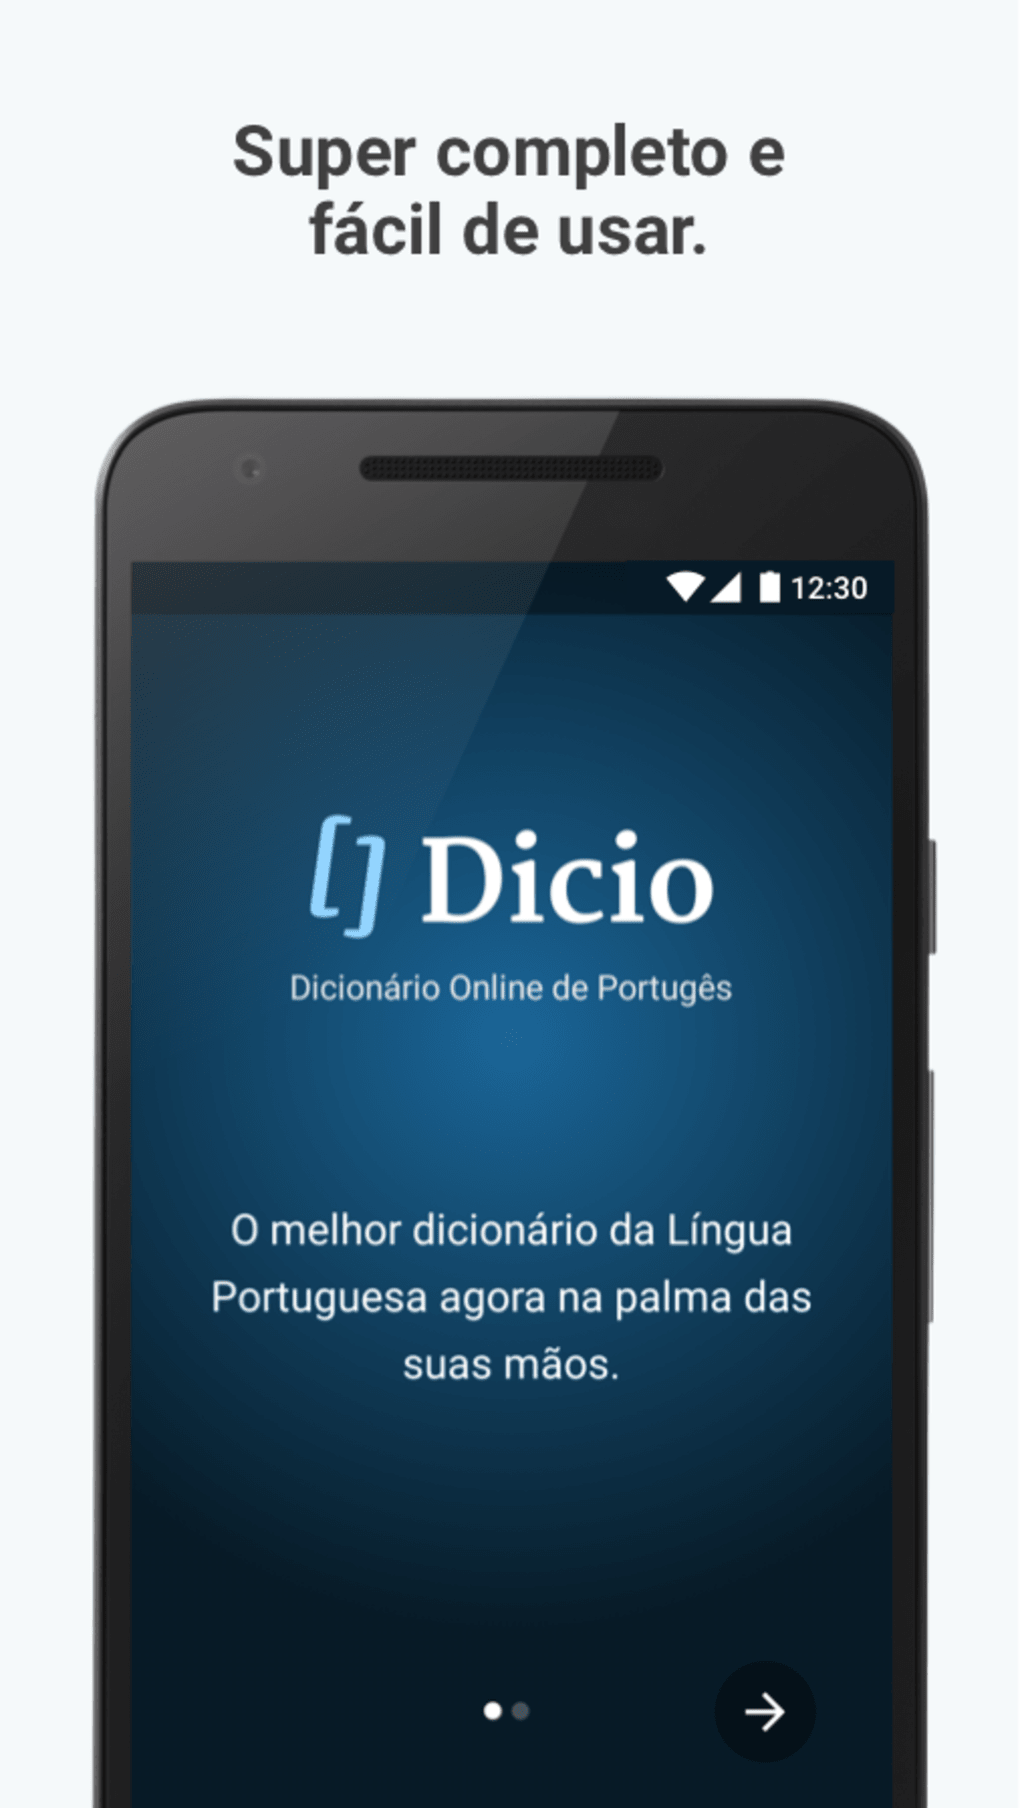 Torre - Dicio, Dicionário Online de Português